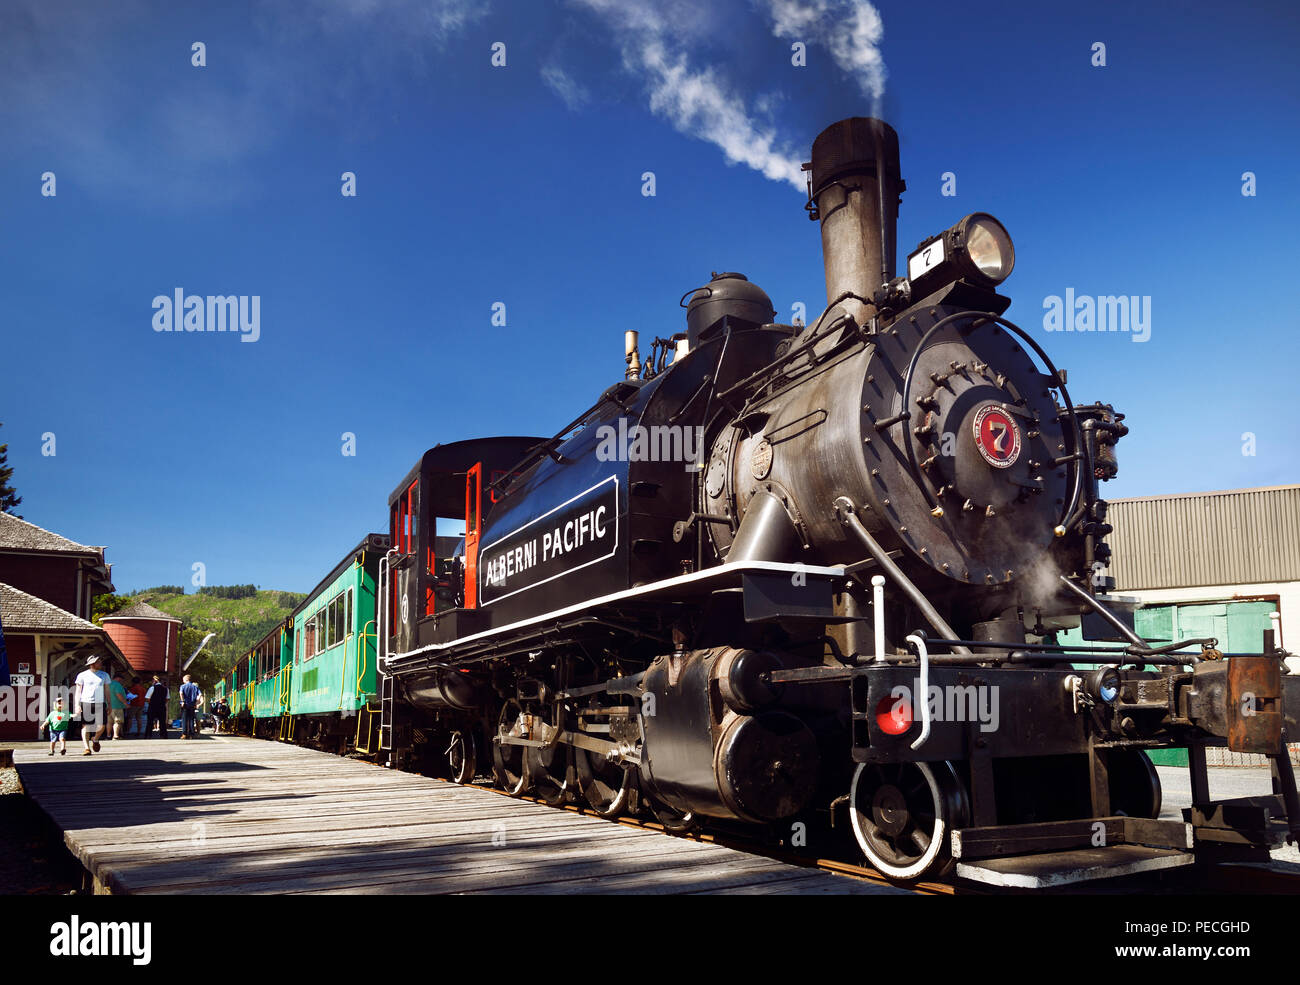 Alberni Pacific Railway historic steam engine at Port Alberni train station, Alberni Valley, Vancouver Island, British Columbia, Canada 2018 Stock Photo